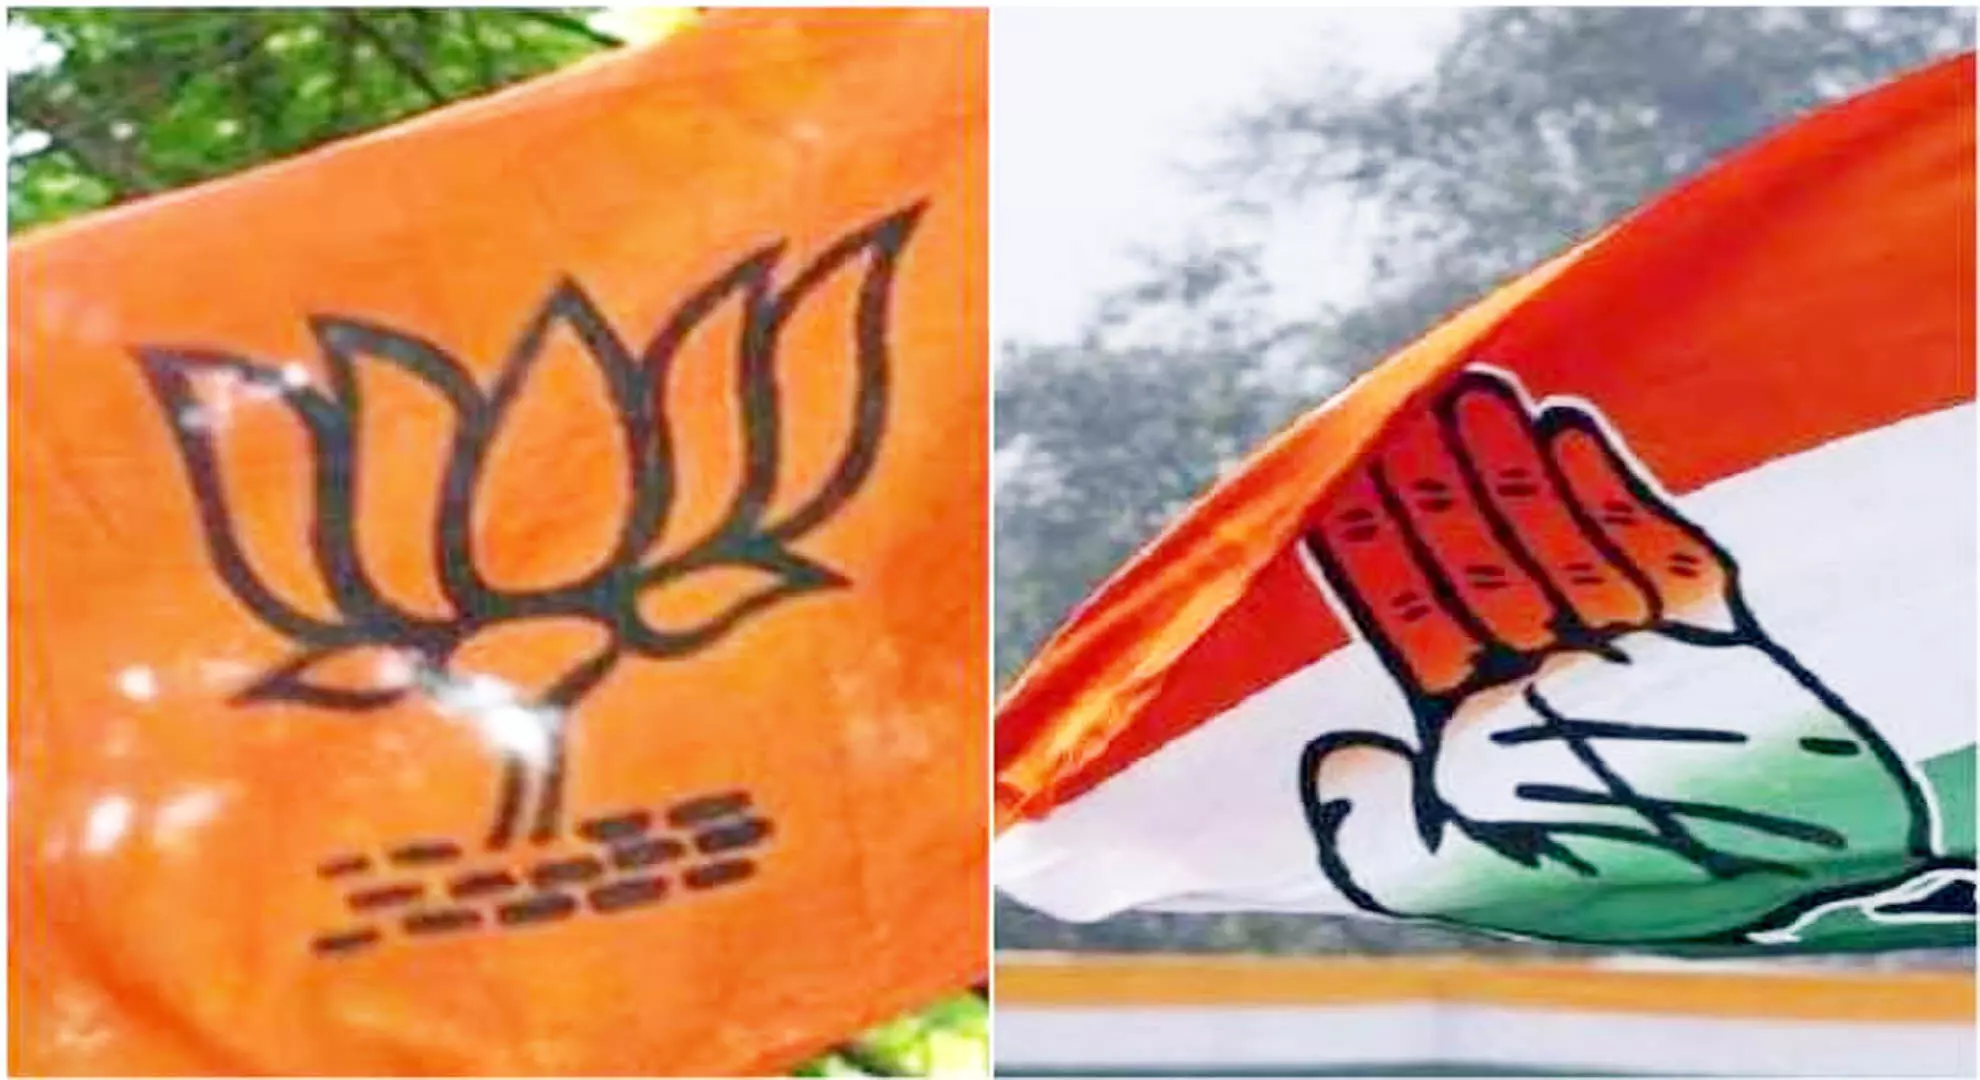 भाजपा, कांग्रेस अधिसूचना से पहले लोकसभा चुनाव के लिए तेलंगाना में अभियान शुरू करेंगी